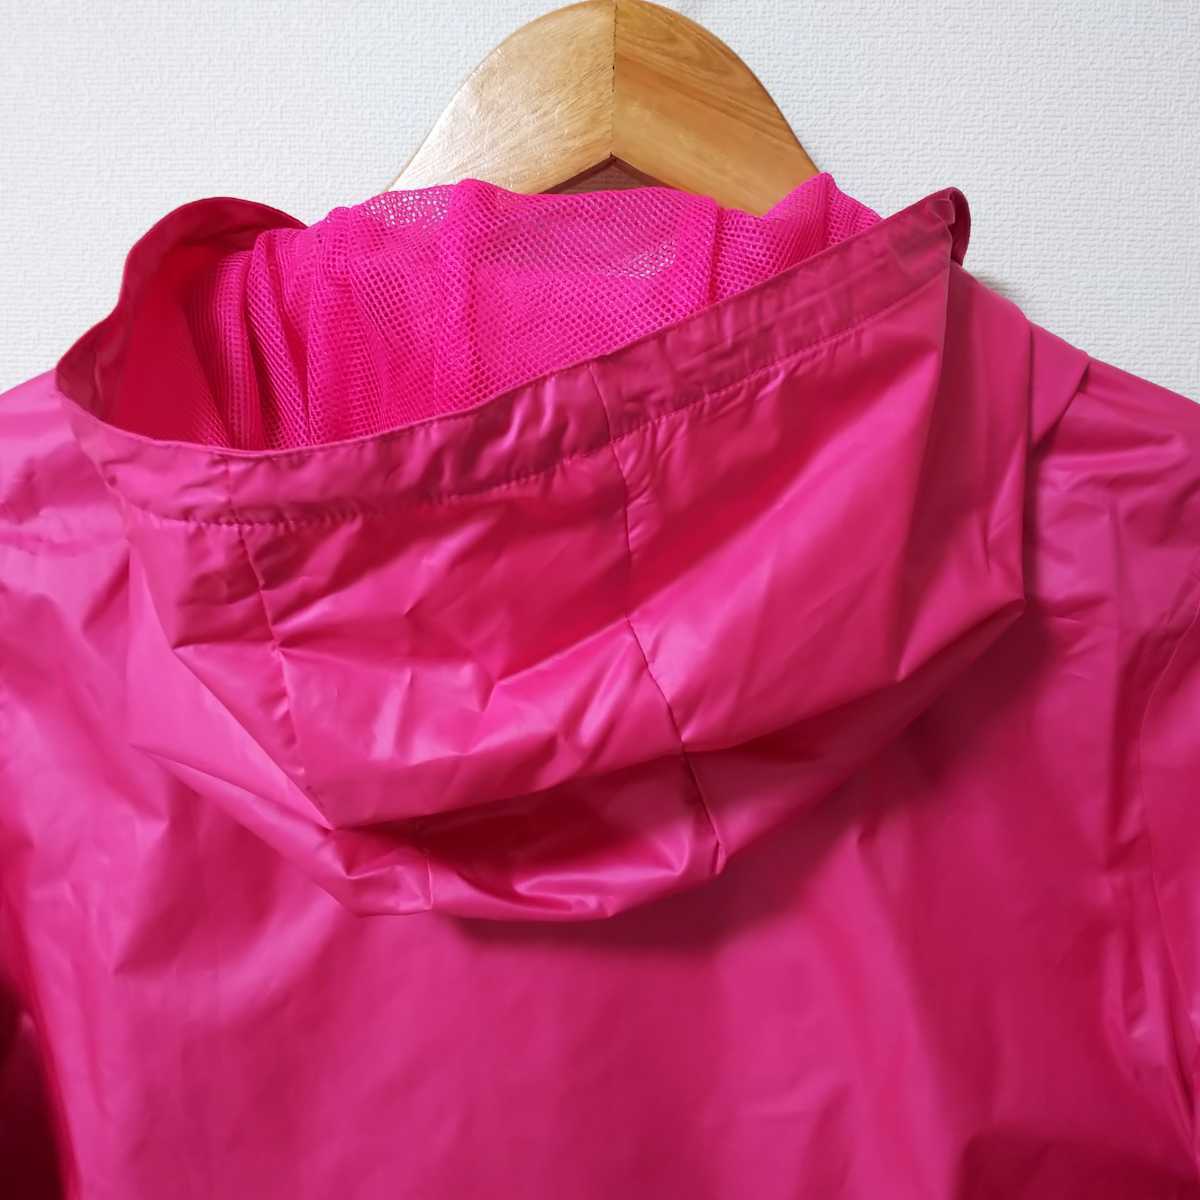 [ популярный бренд ]Reebok Reebok core ветровка тренировка жакет женский OT размер розовый обратная сторона сетка 